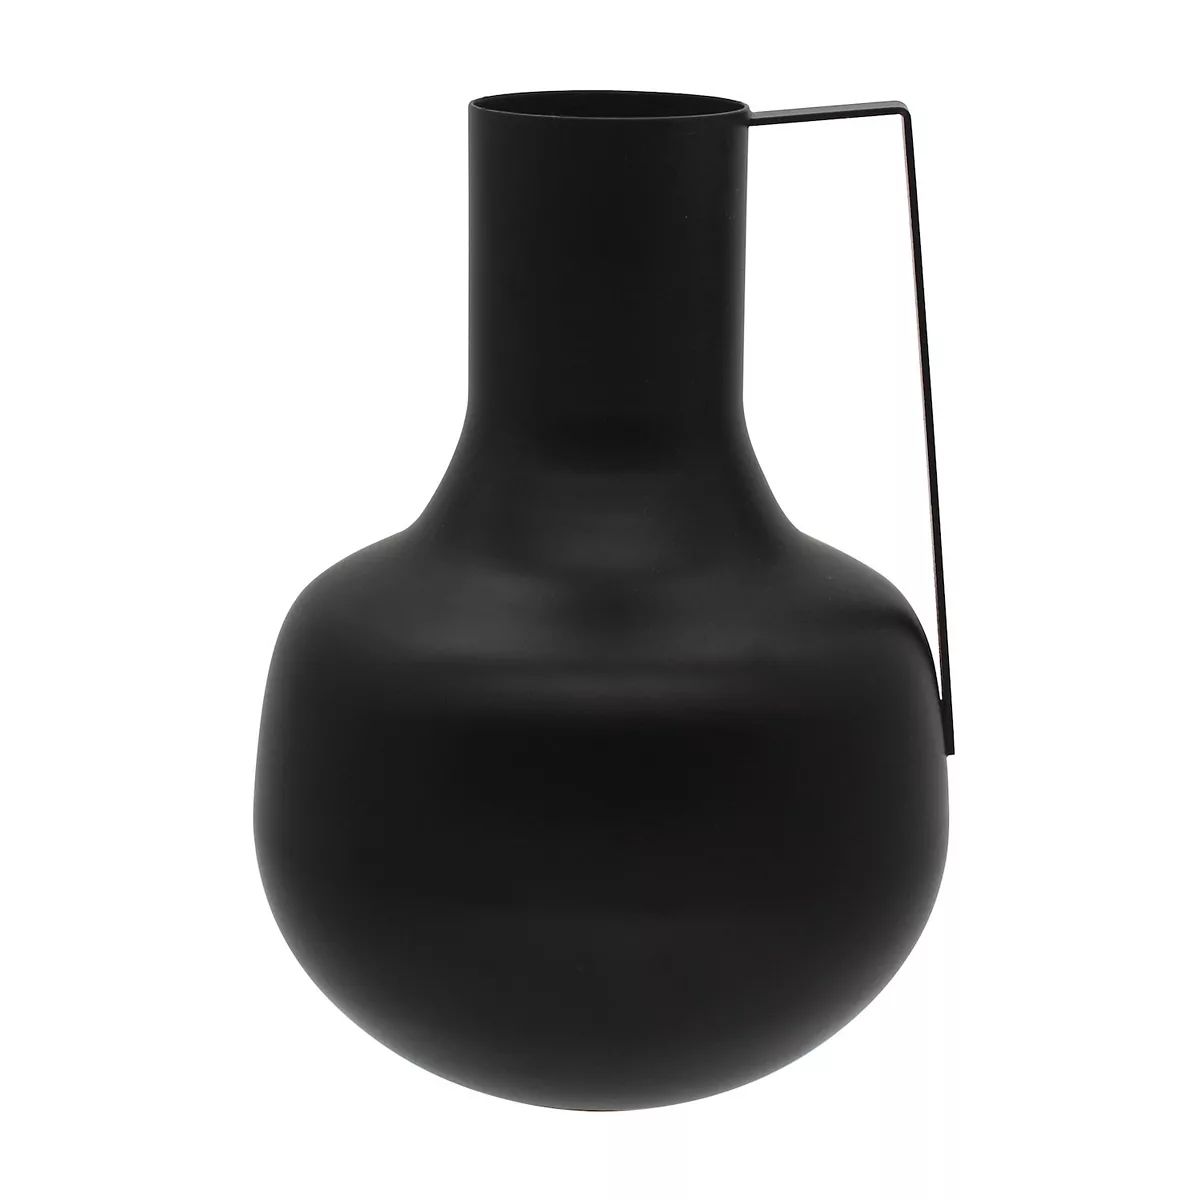 Painted Black Metal Vase with Handle | Kohl's